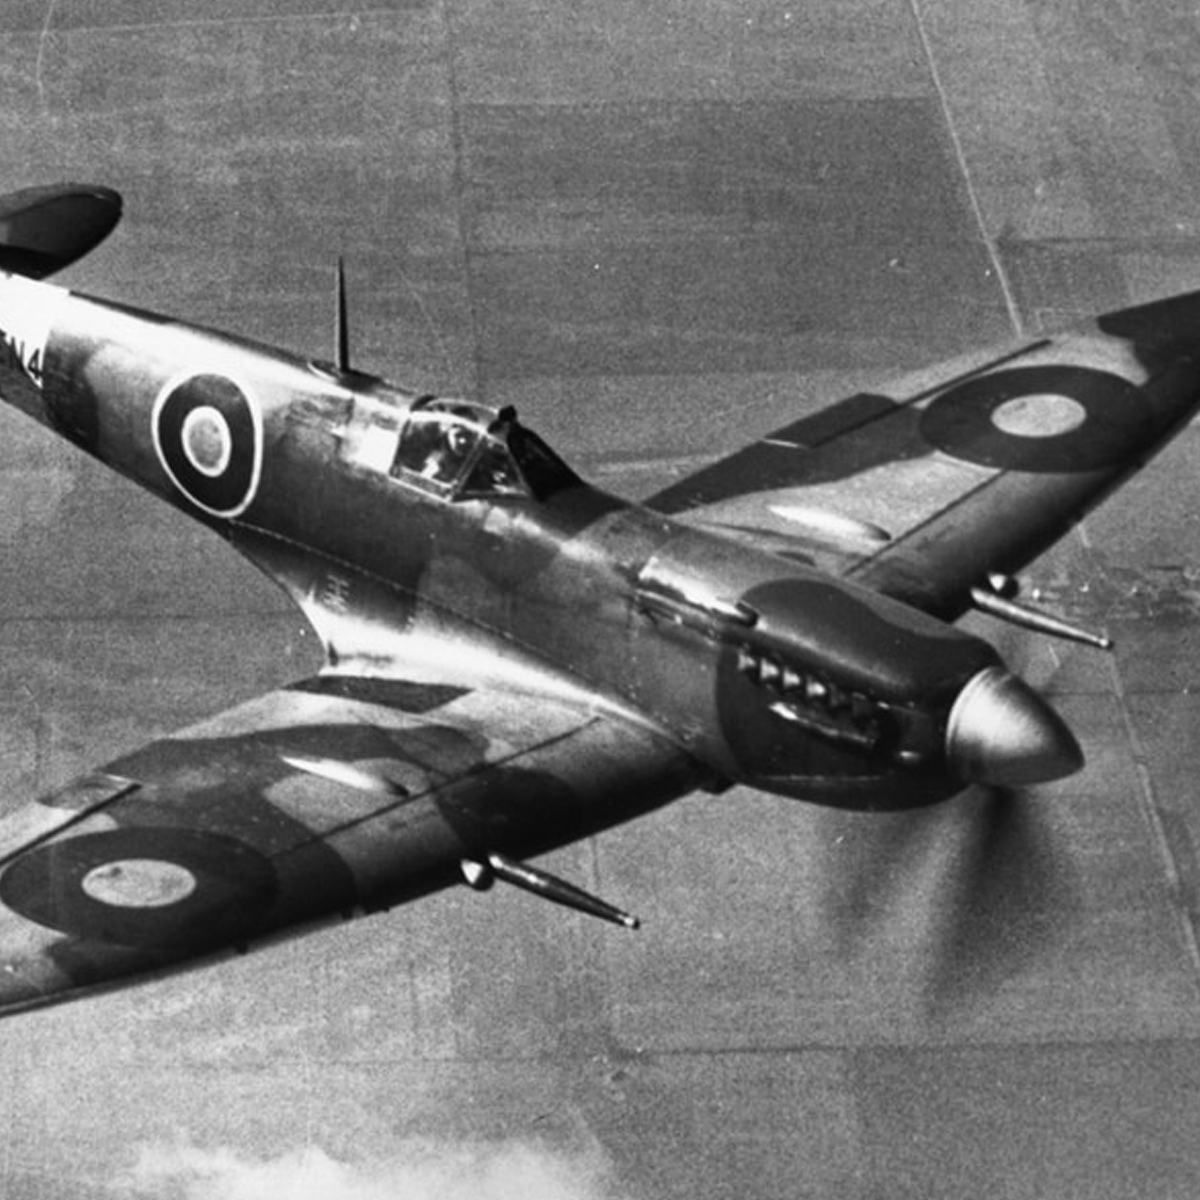 Spitfire aircraft in flight